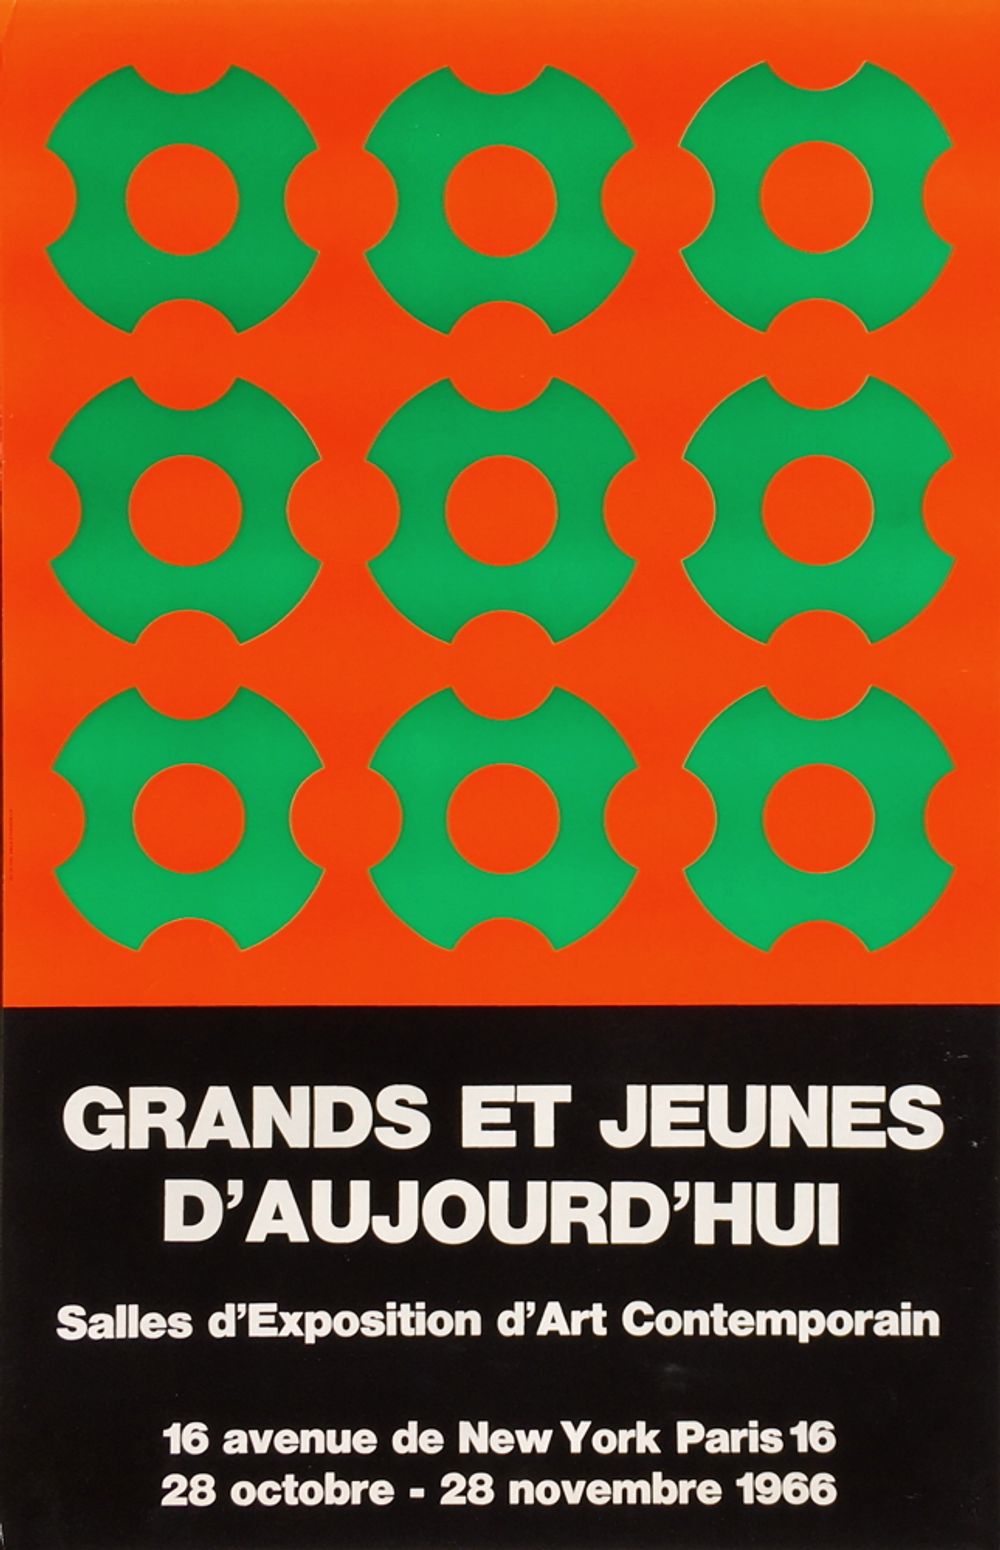 Expo 66 - Grands et Jeunes d'Aujourd'hui